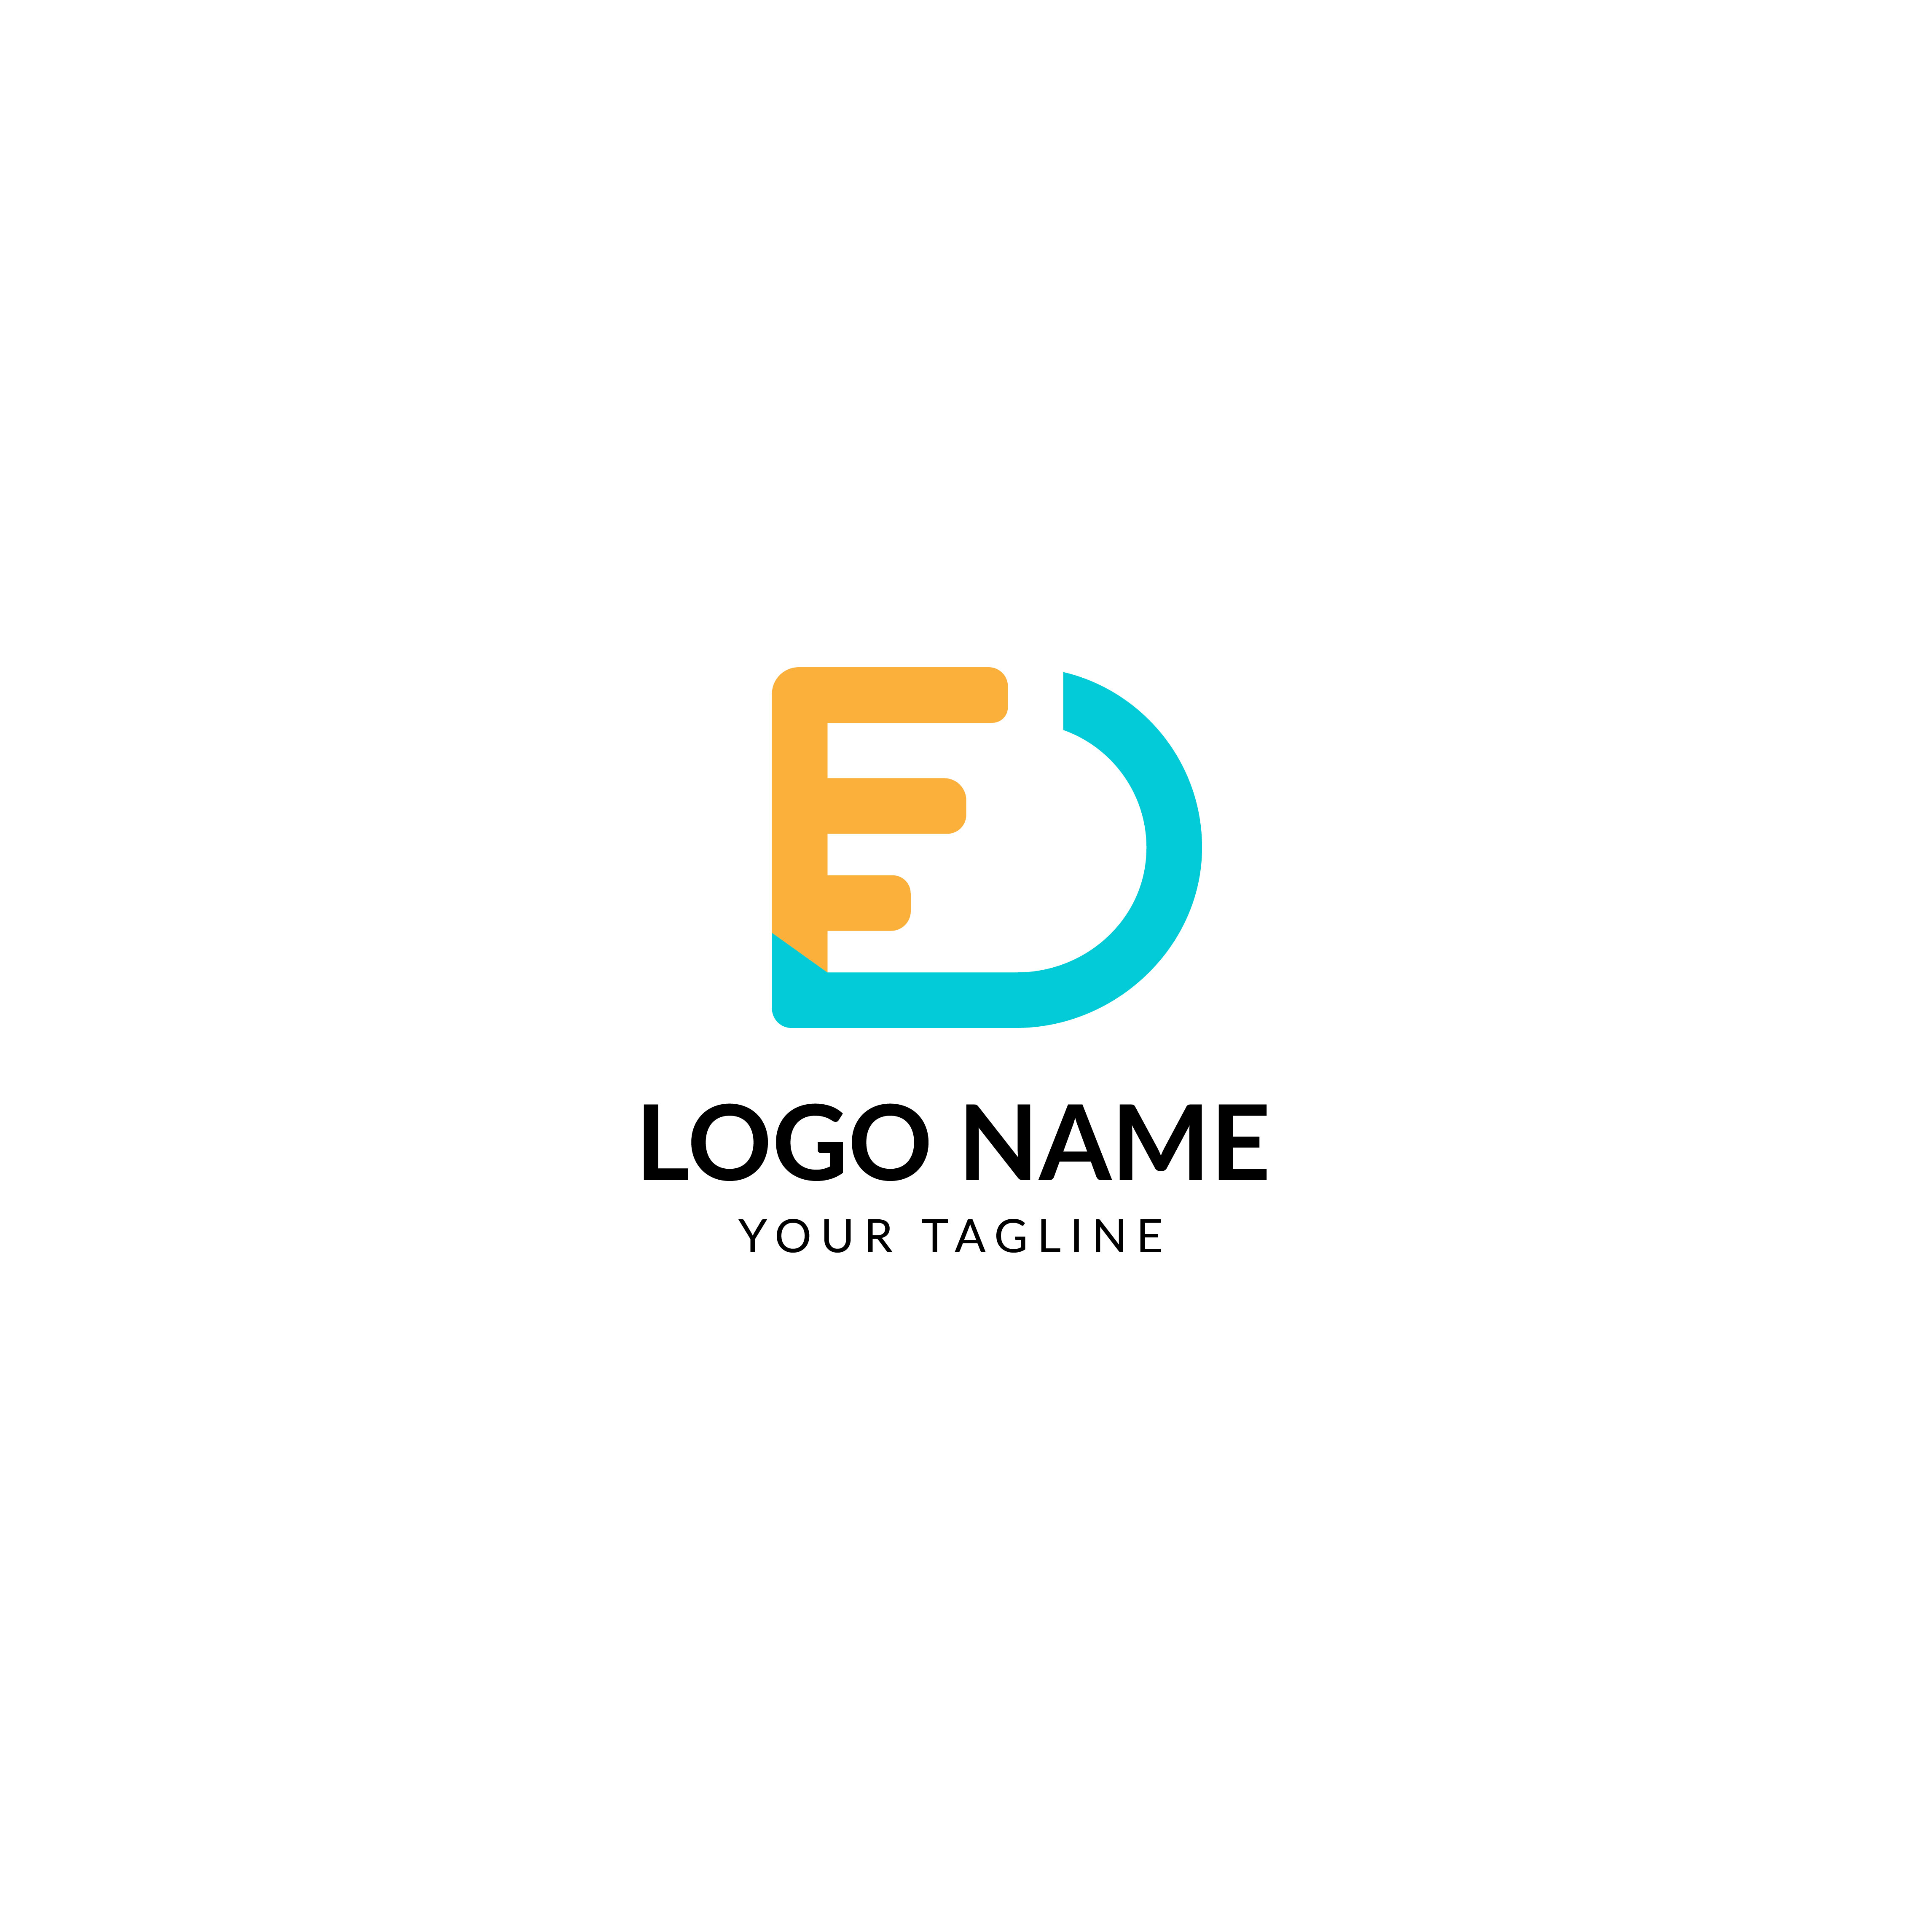 D letter logo design cover image.